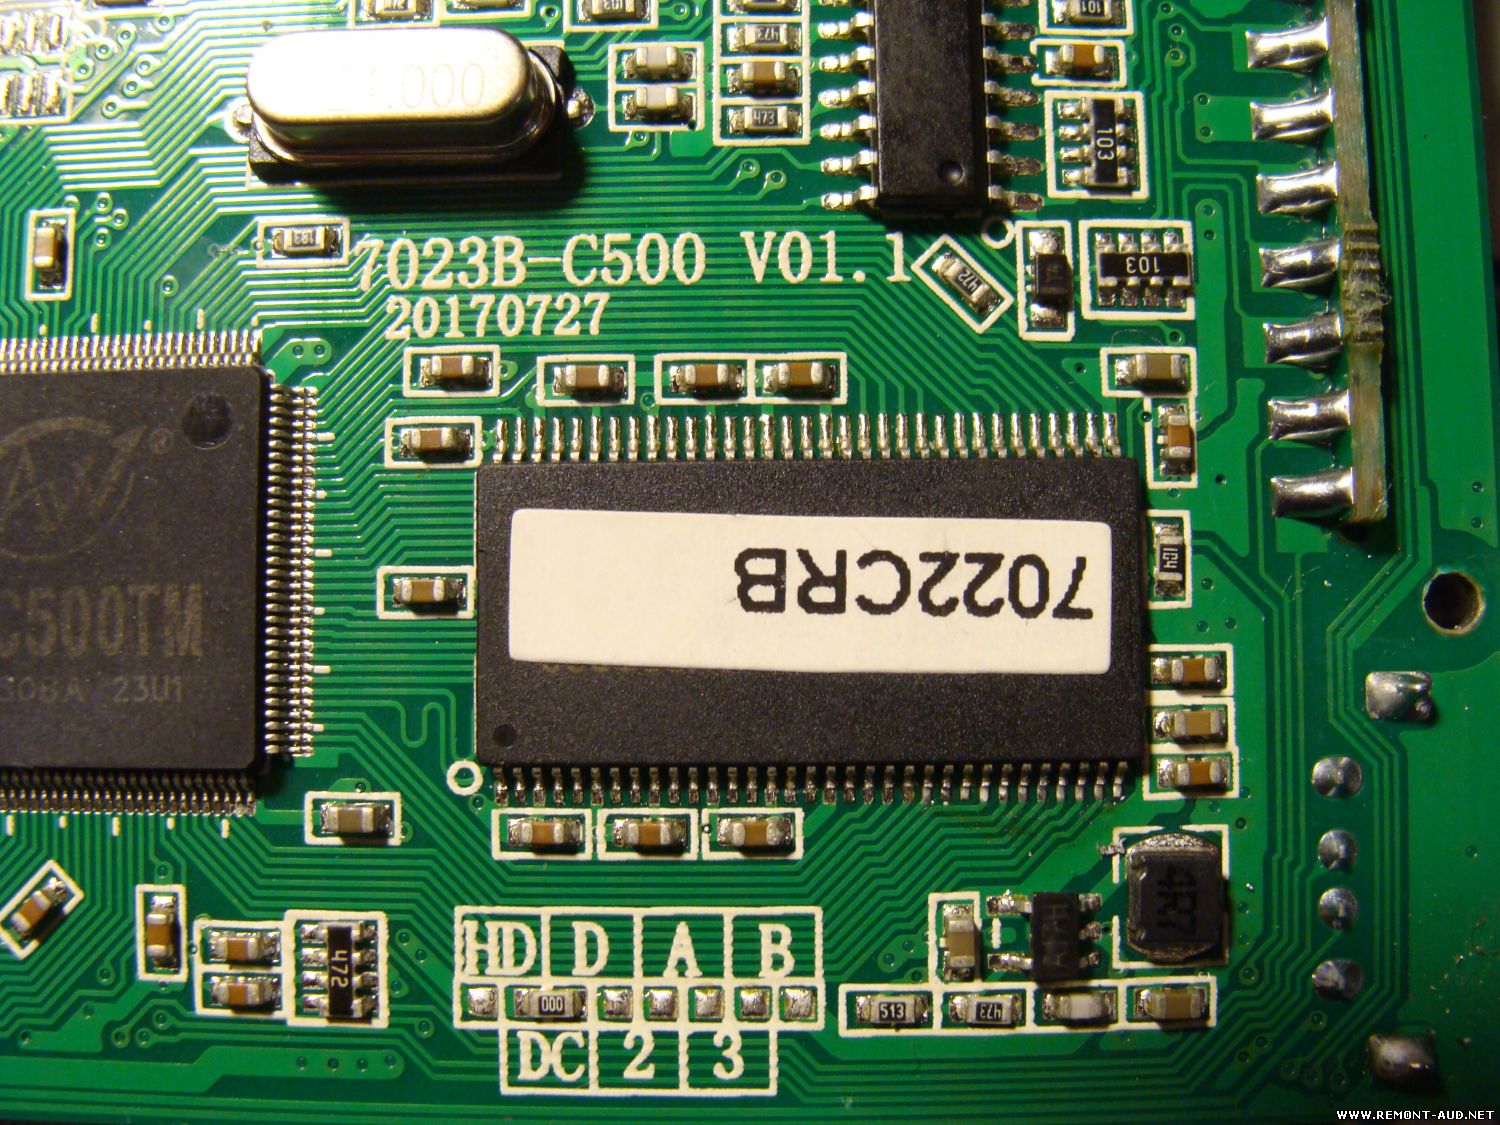 Рабочая прошивка. <7022b-c500 v01.1>. F1c500 магнитола. Процессор f1c500tm схема. 7026g-c500 v01.1.